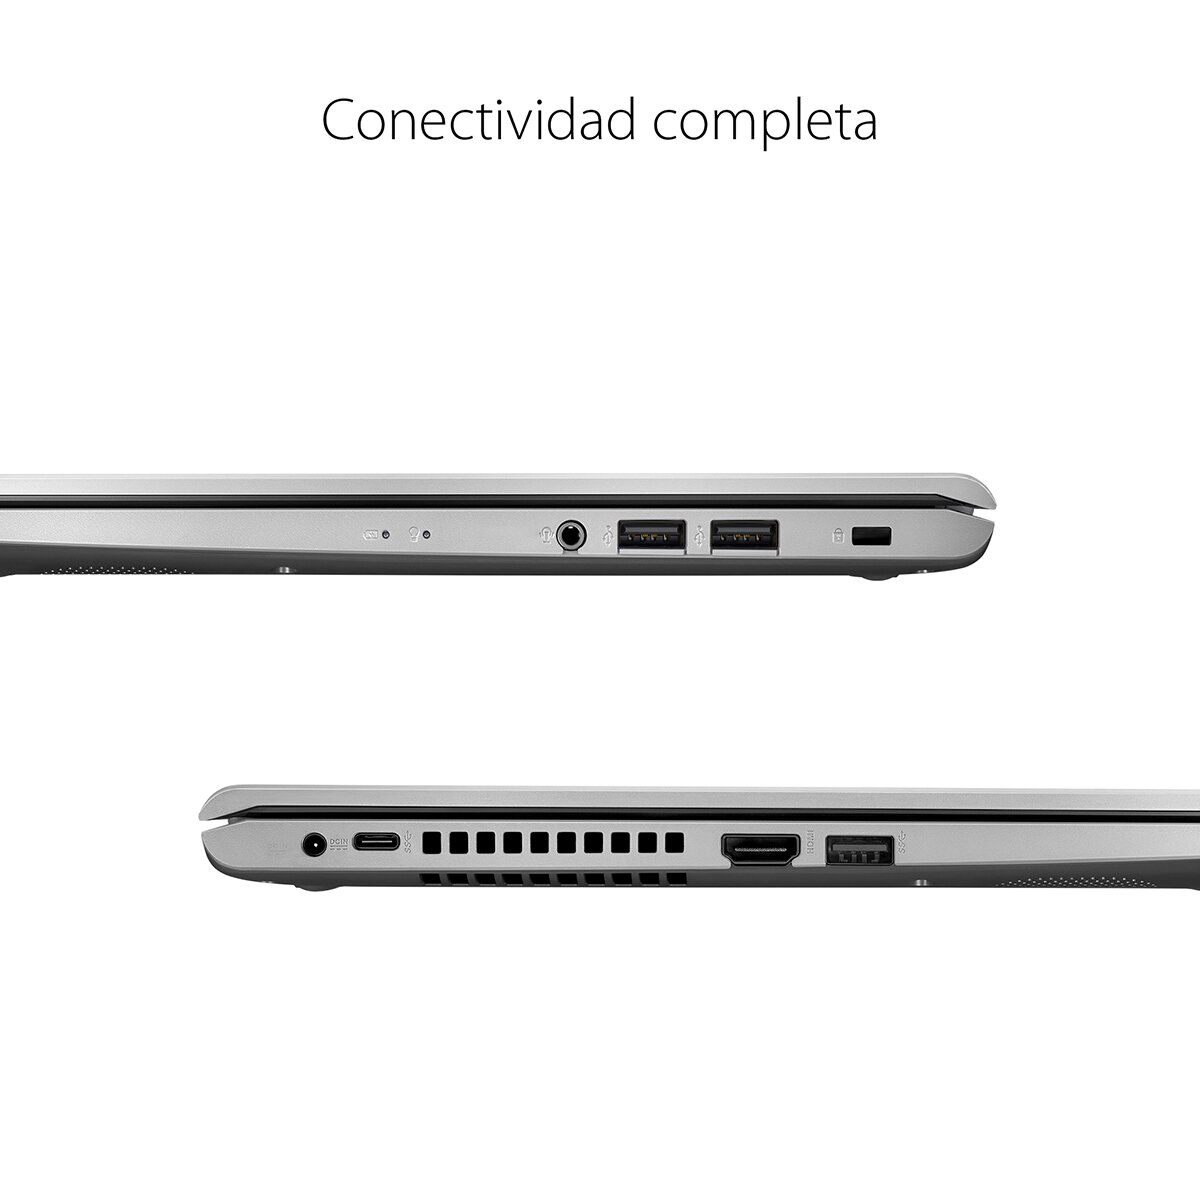 Asus VivoBook 15.6" FHD Core i3 11va Generación 